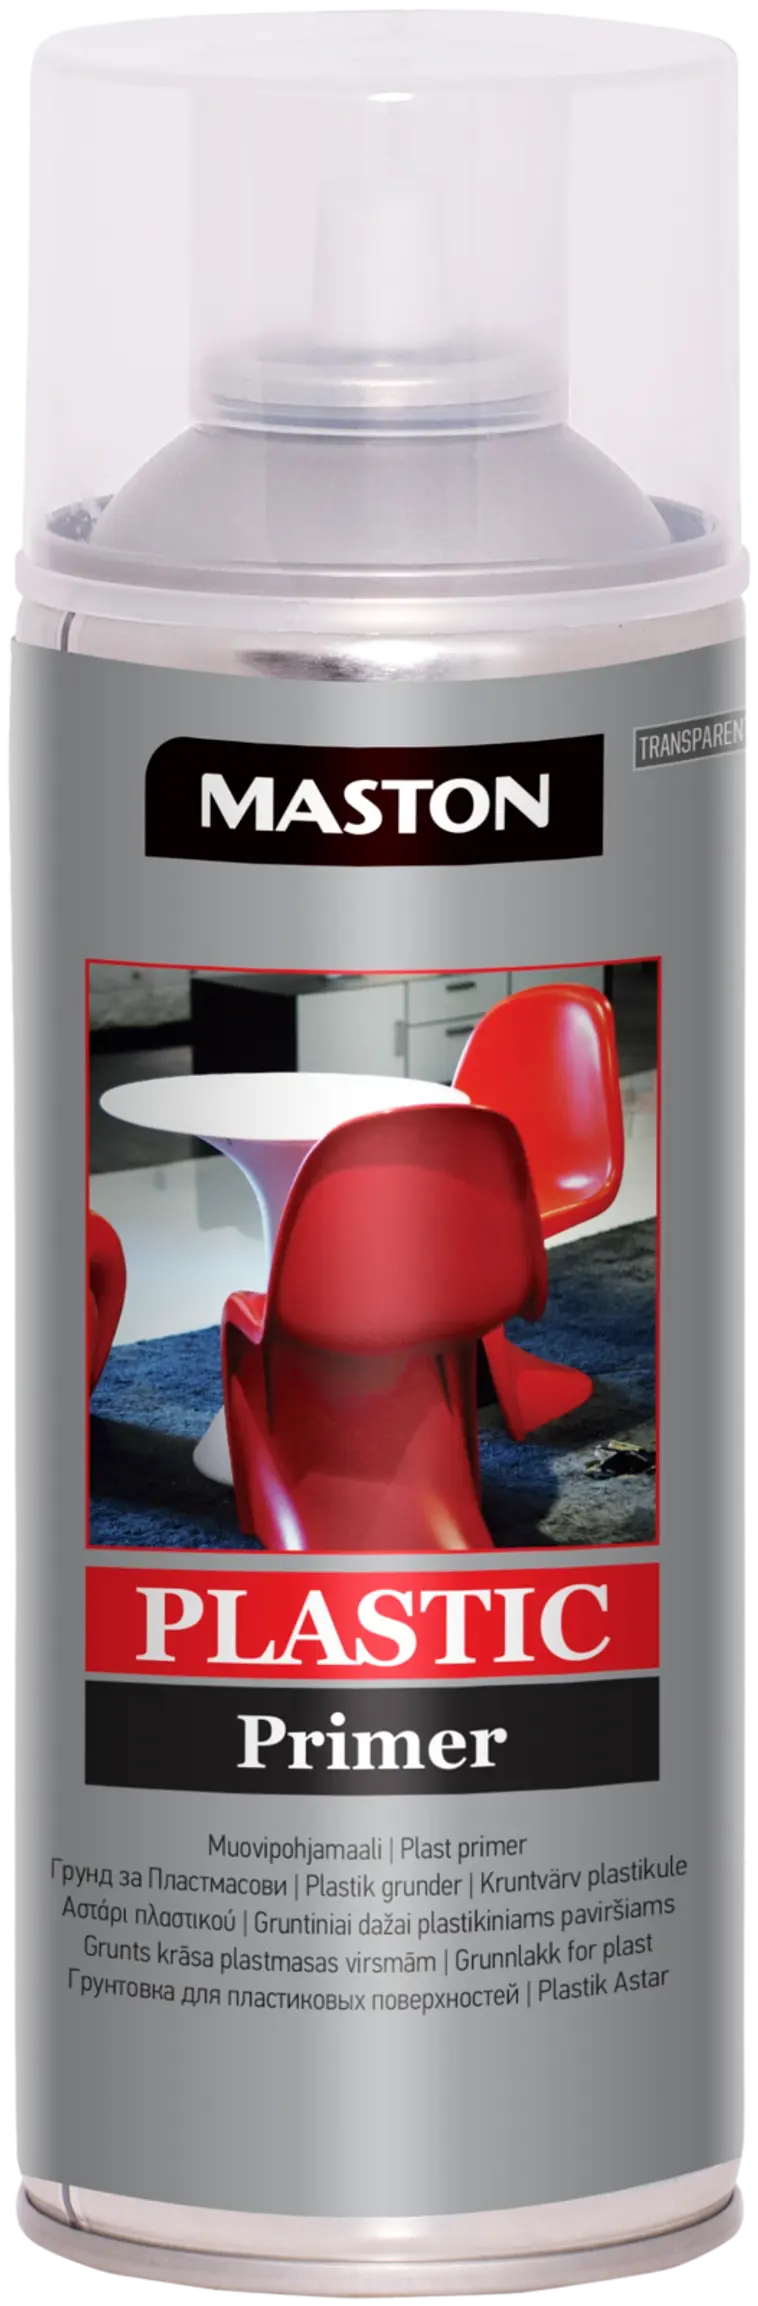 Maston Muovipohjamaali spray 400ml kirkas | Prisma verkkokauppa